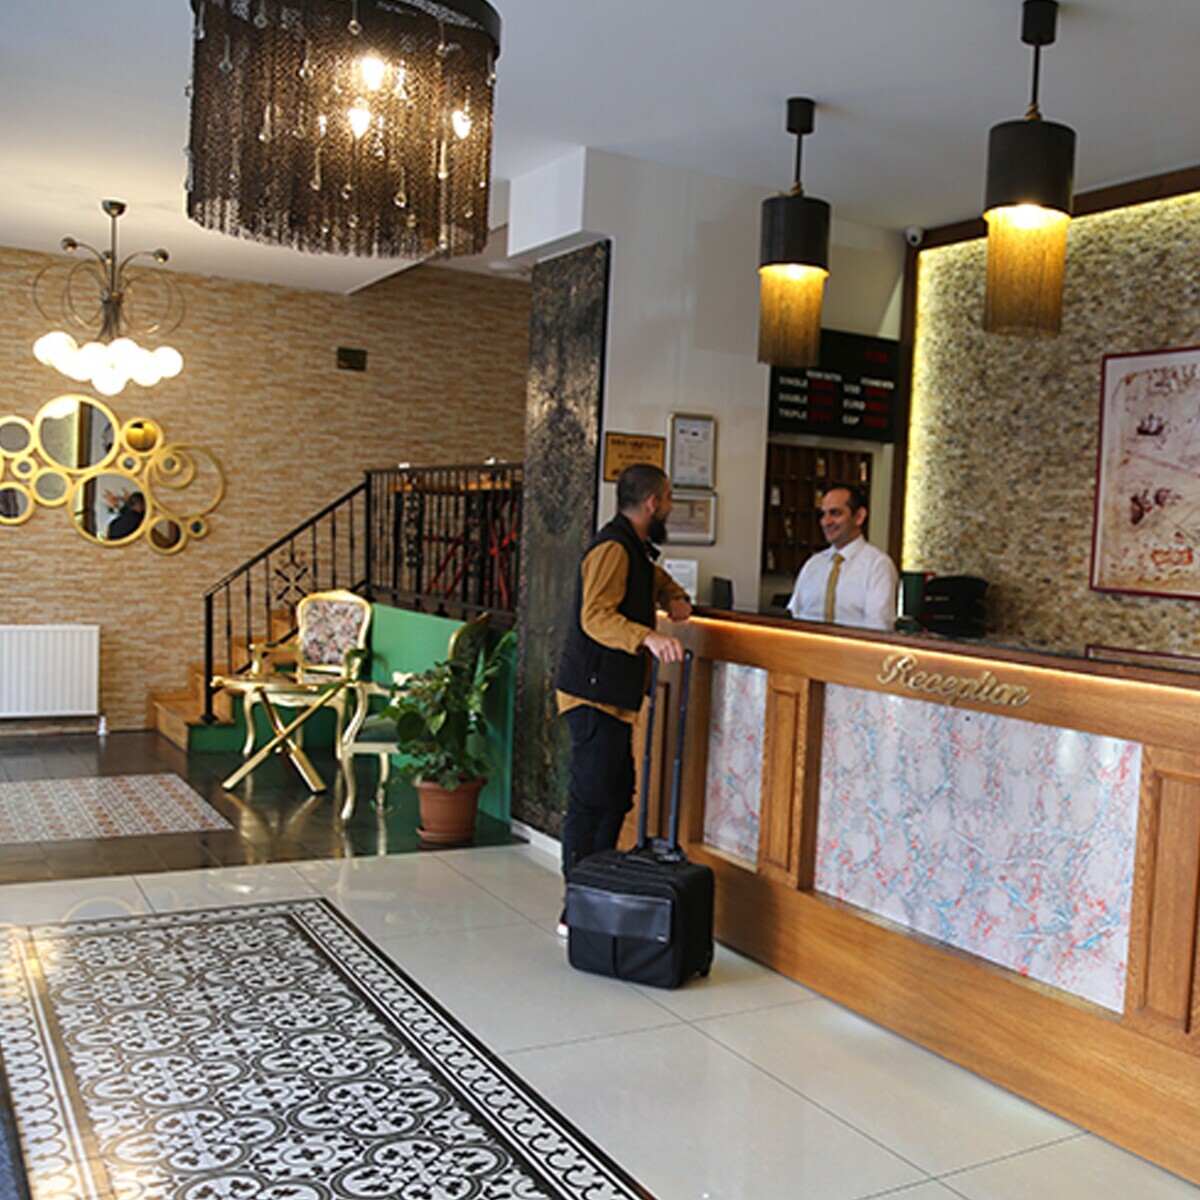 Kadıköy Emirtimes Otel'de Tek veya Çift Kişi Konfor Dolu Konaklama Keyfi